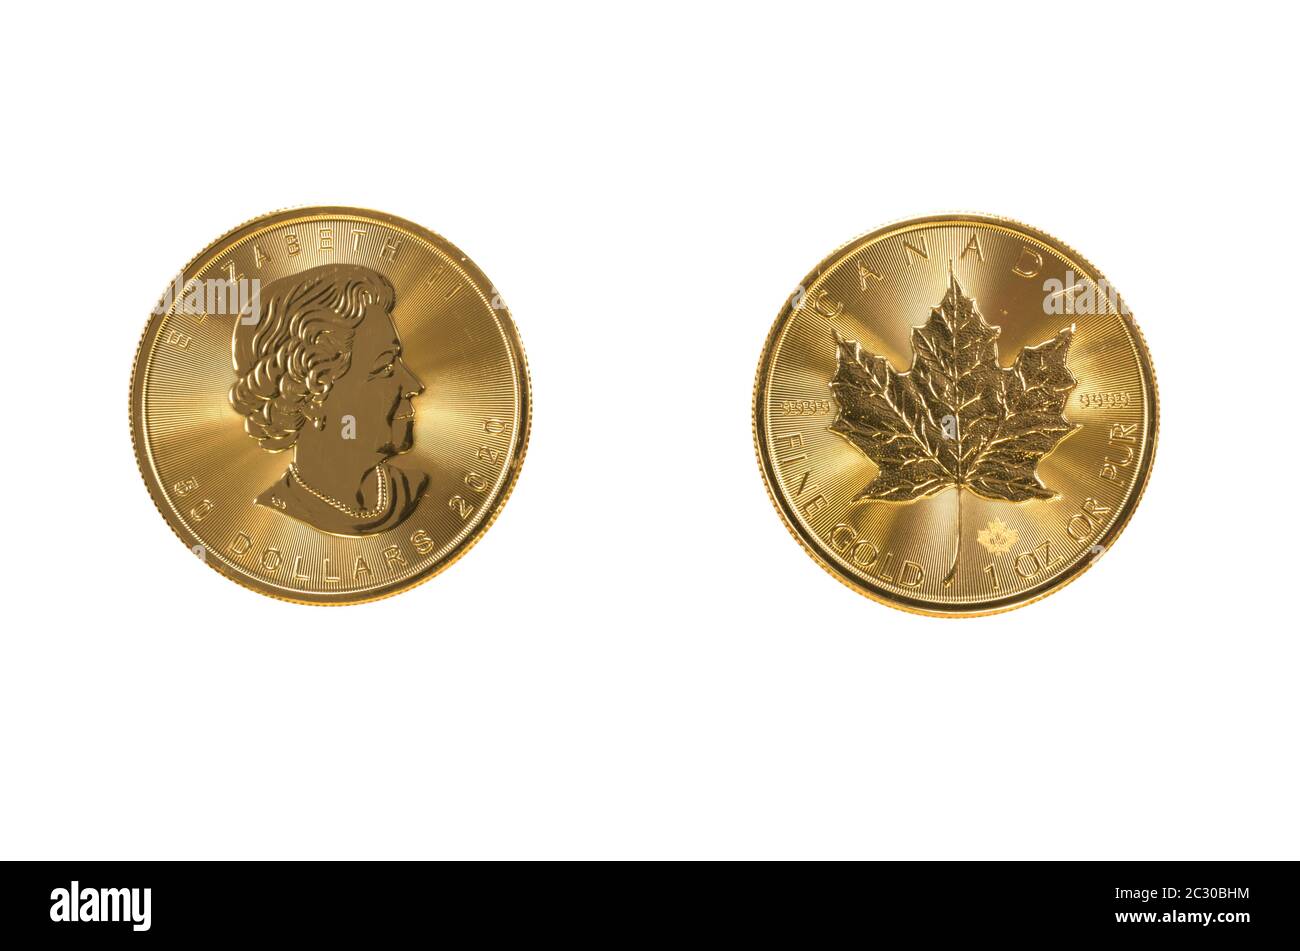 Pièce d'or, 1 once, feuille d'érable contre la reine Elizabeth II et l'envers feuille d'érable, Grande-Bretagne Banque D'Images